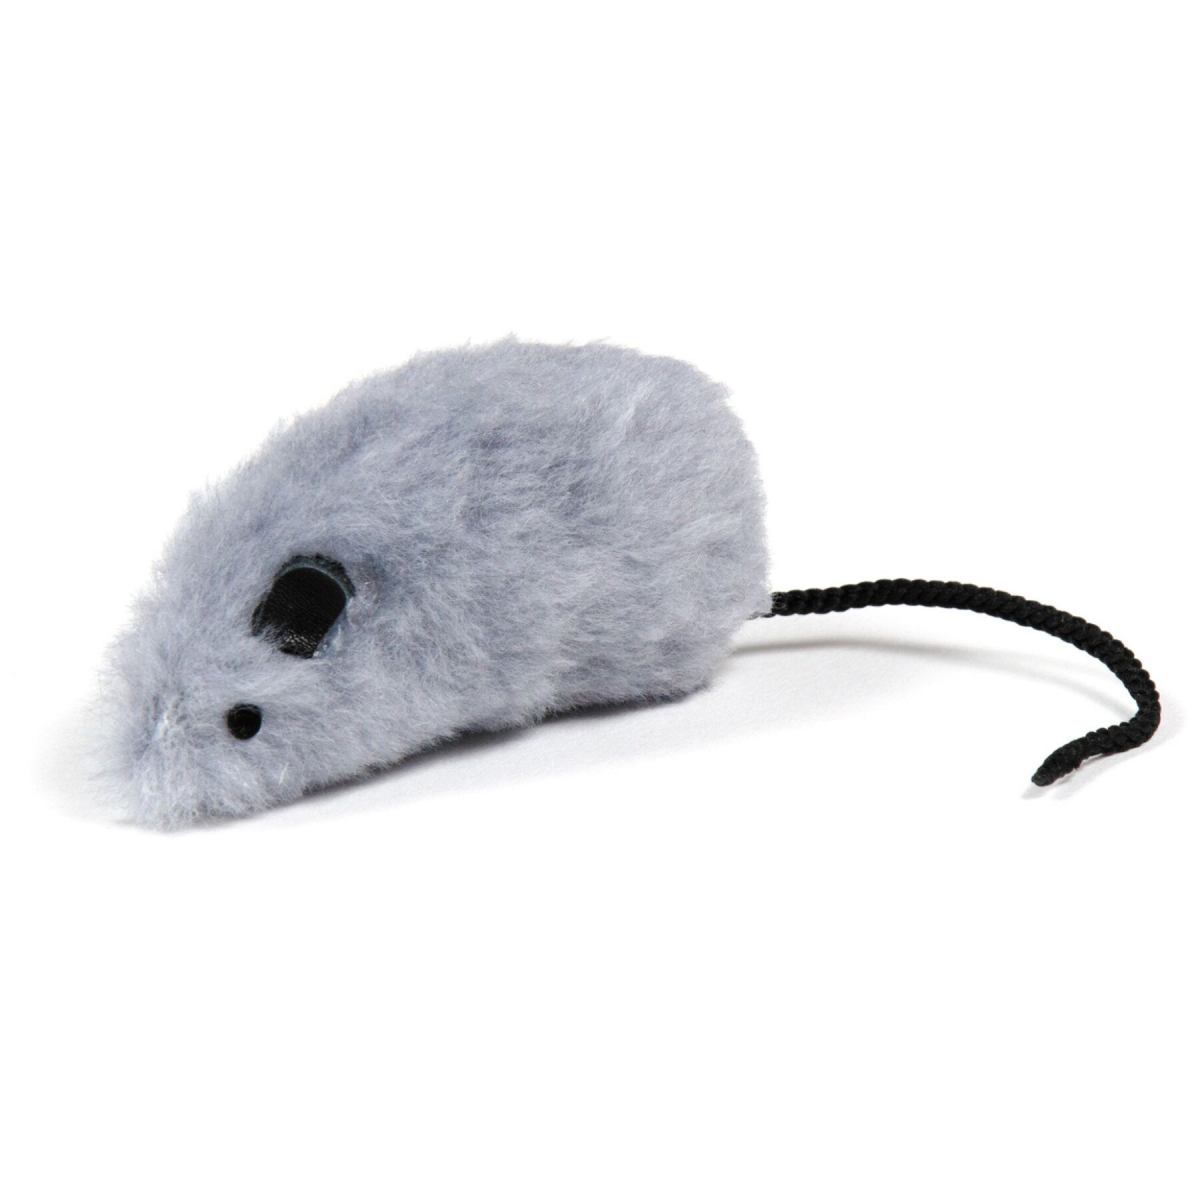 Іграшка для котів Природа Мишка, 8x4 см, сірий - фото 1